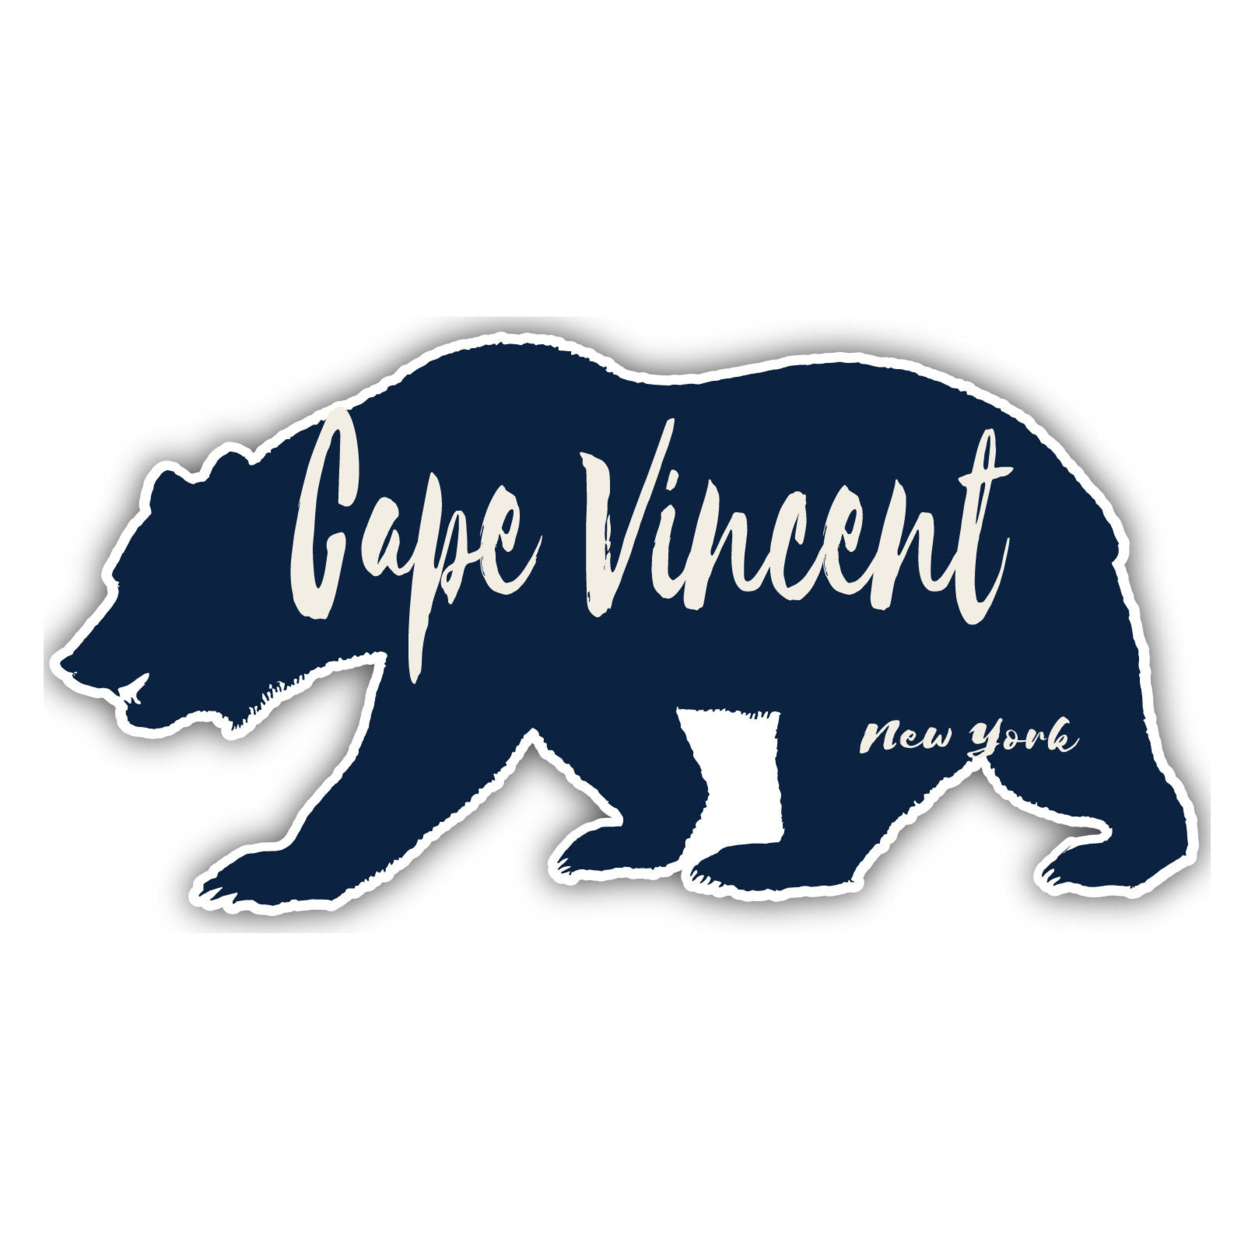 Cape Vincent New York Souvenir Decorative Stickers (Choose Theme And Size) - Single Unit, 6-Inch, Bear